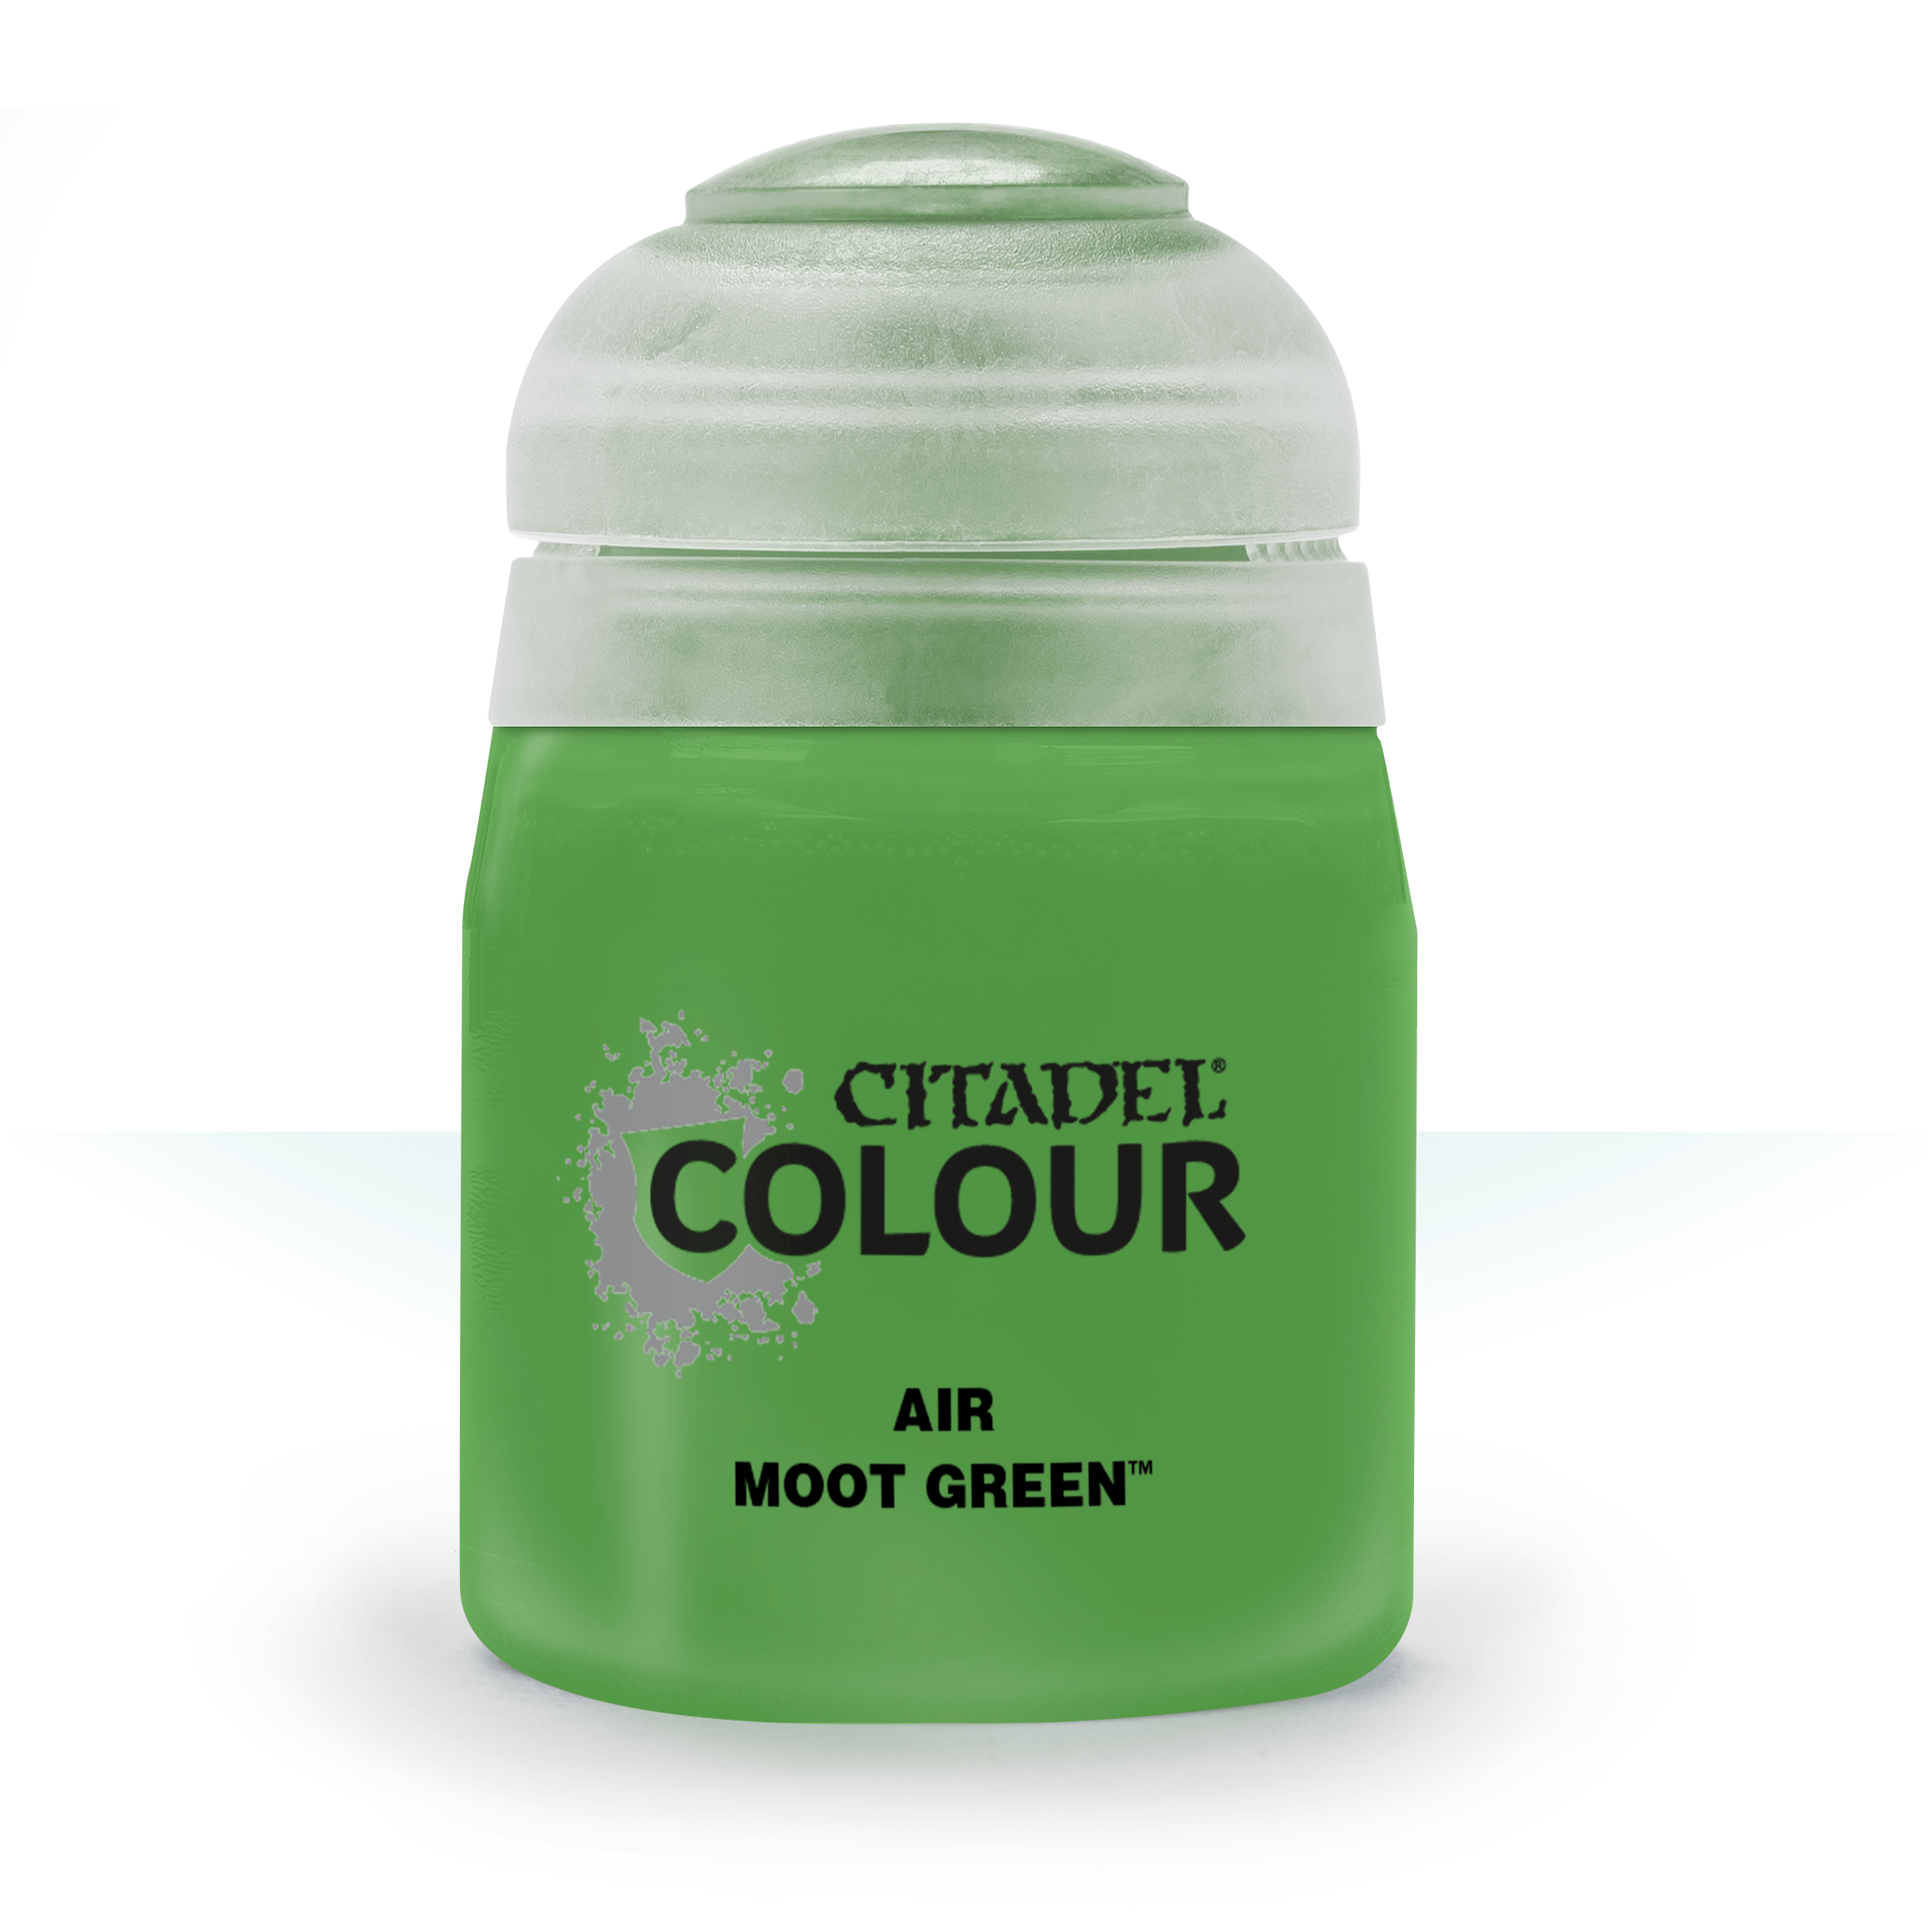 Air Moot Green - Citadel Colour - 24 ml